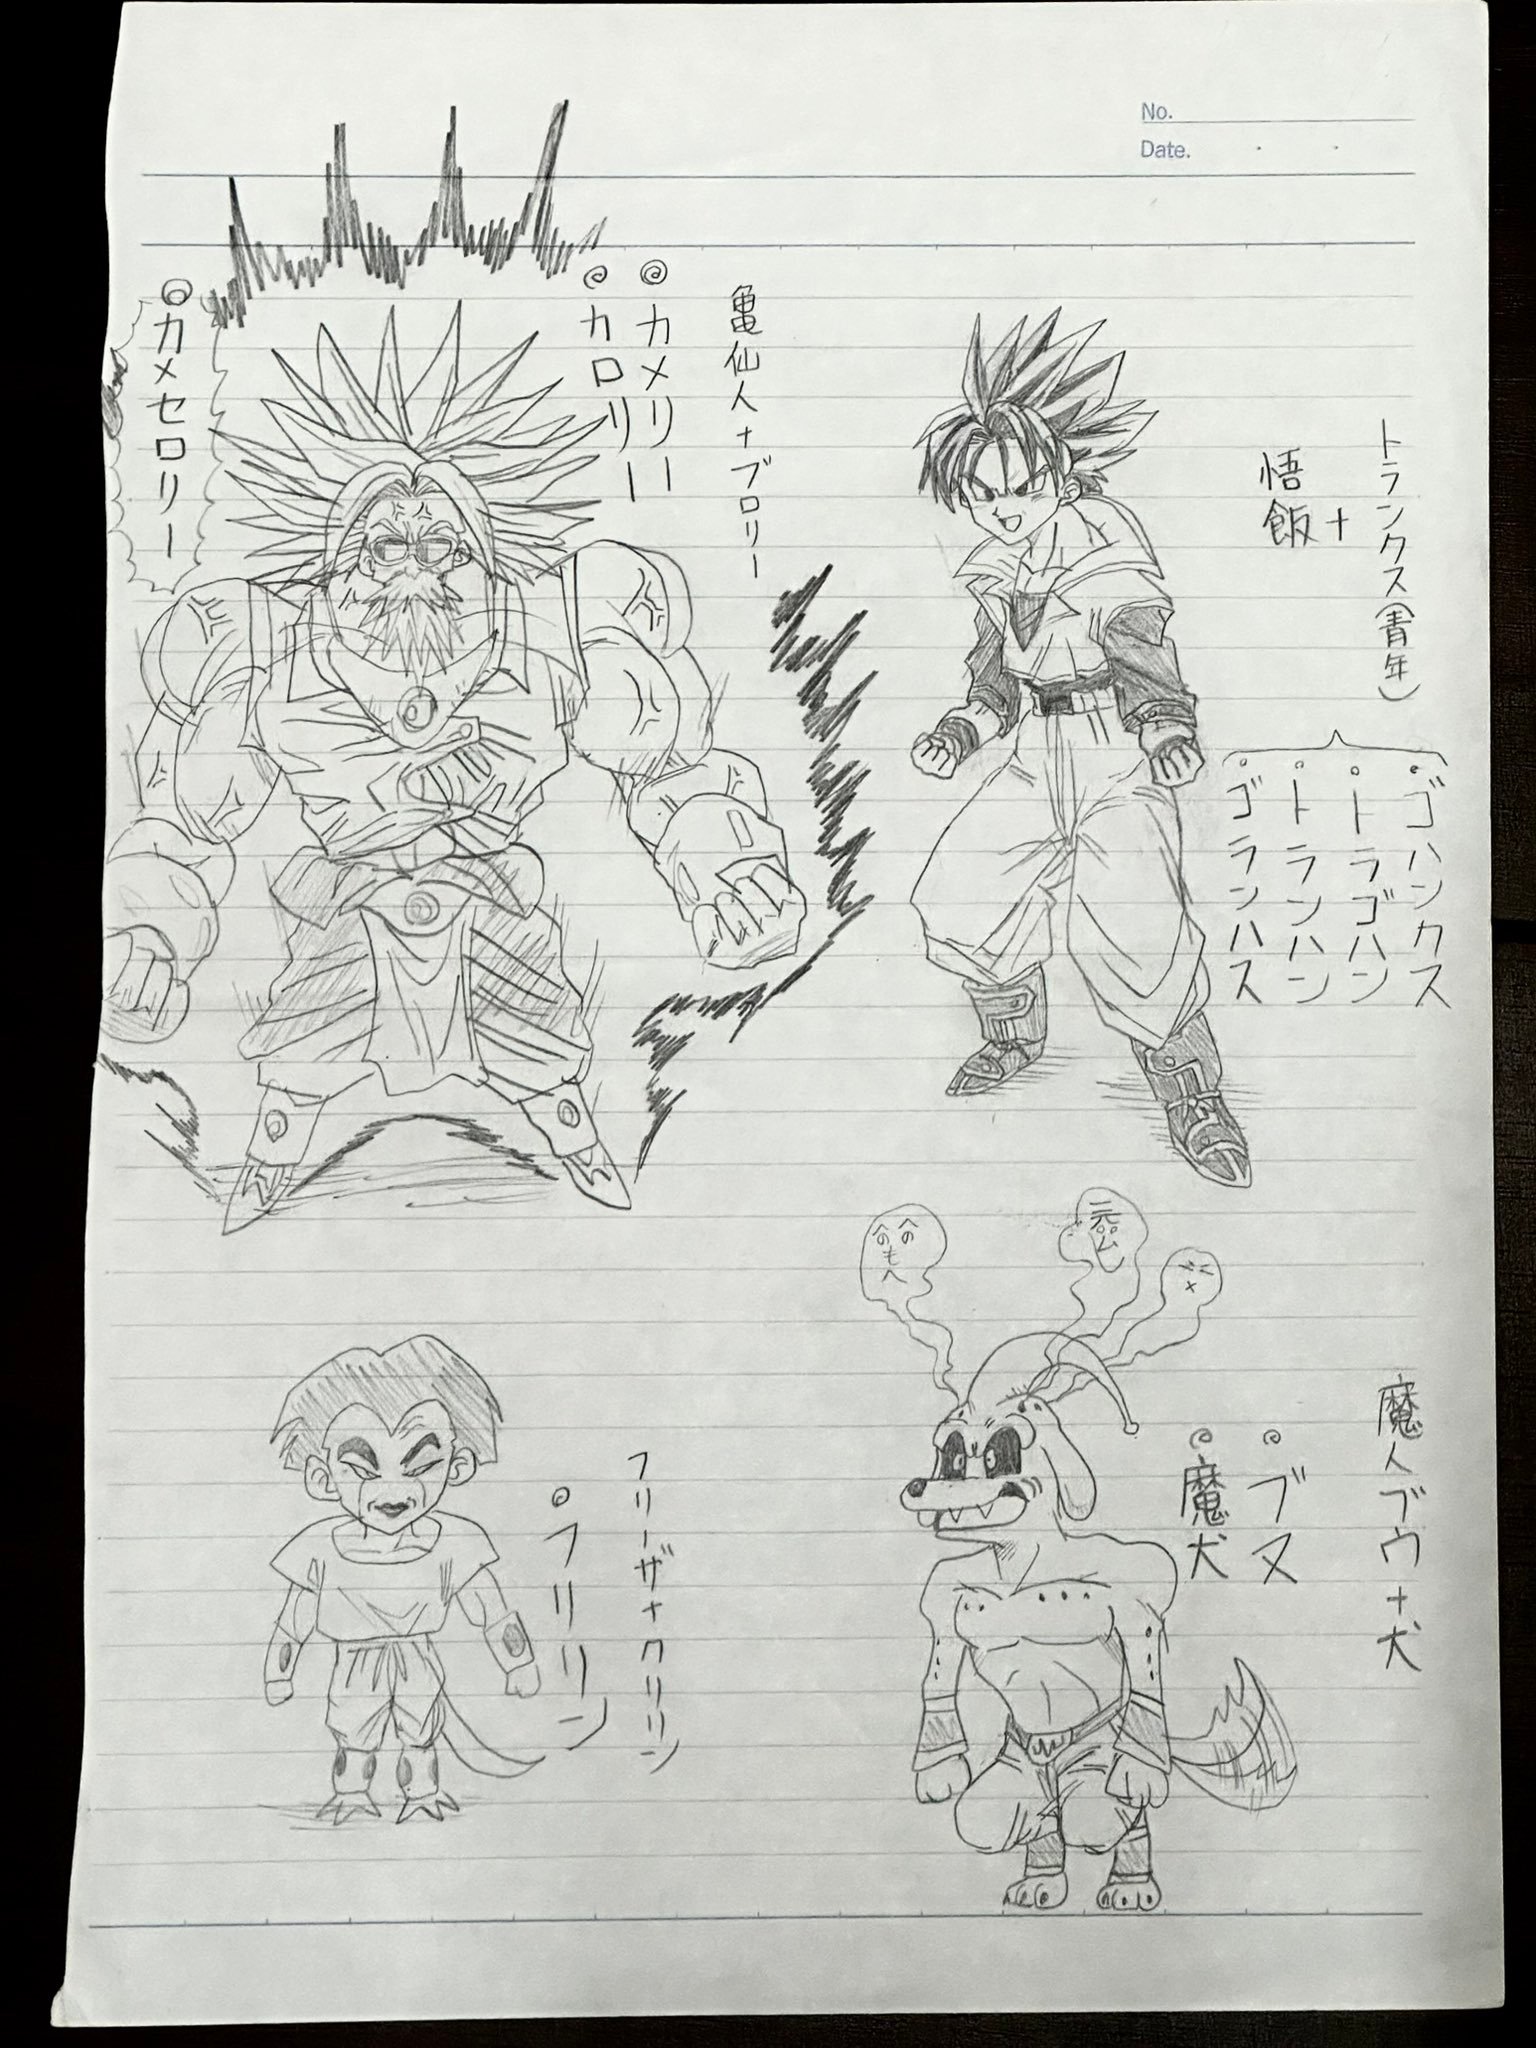 Kentaro Yabuki shows his Dragon Ball 1 Illustrations